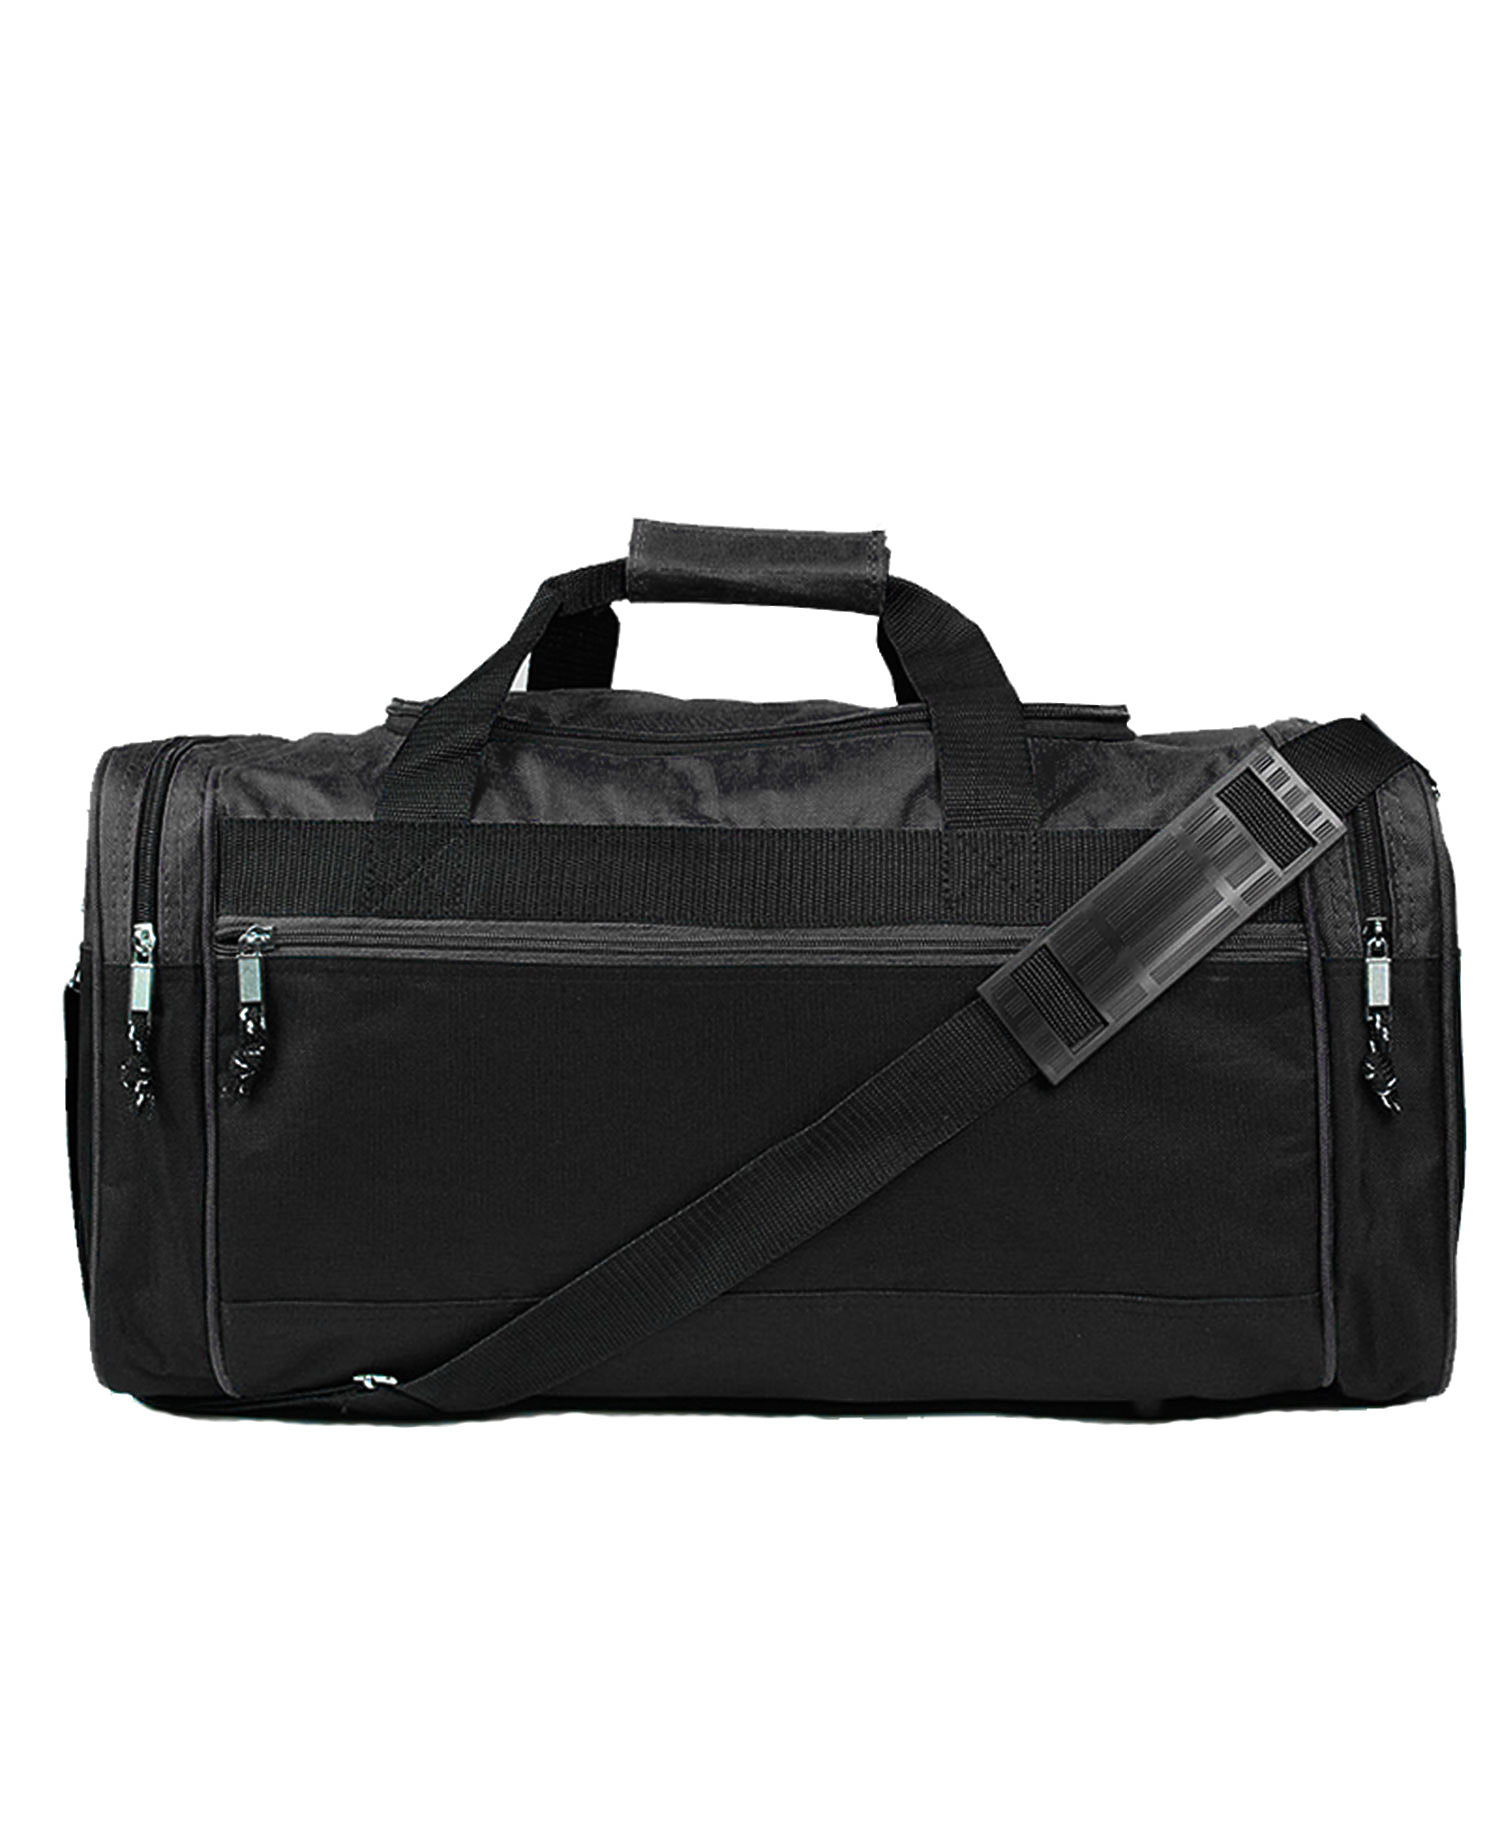 Q-Tees Q94200 - Large Duffle Bag